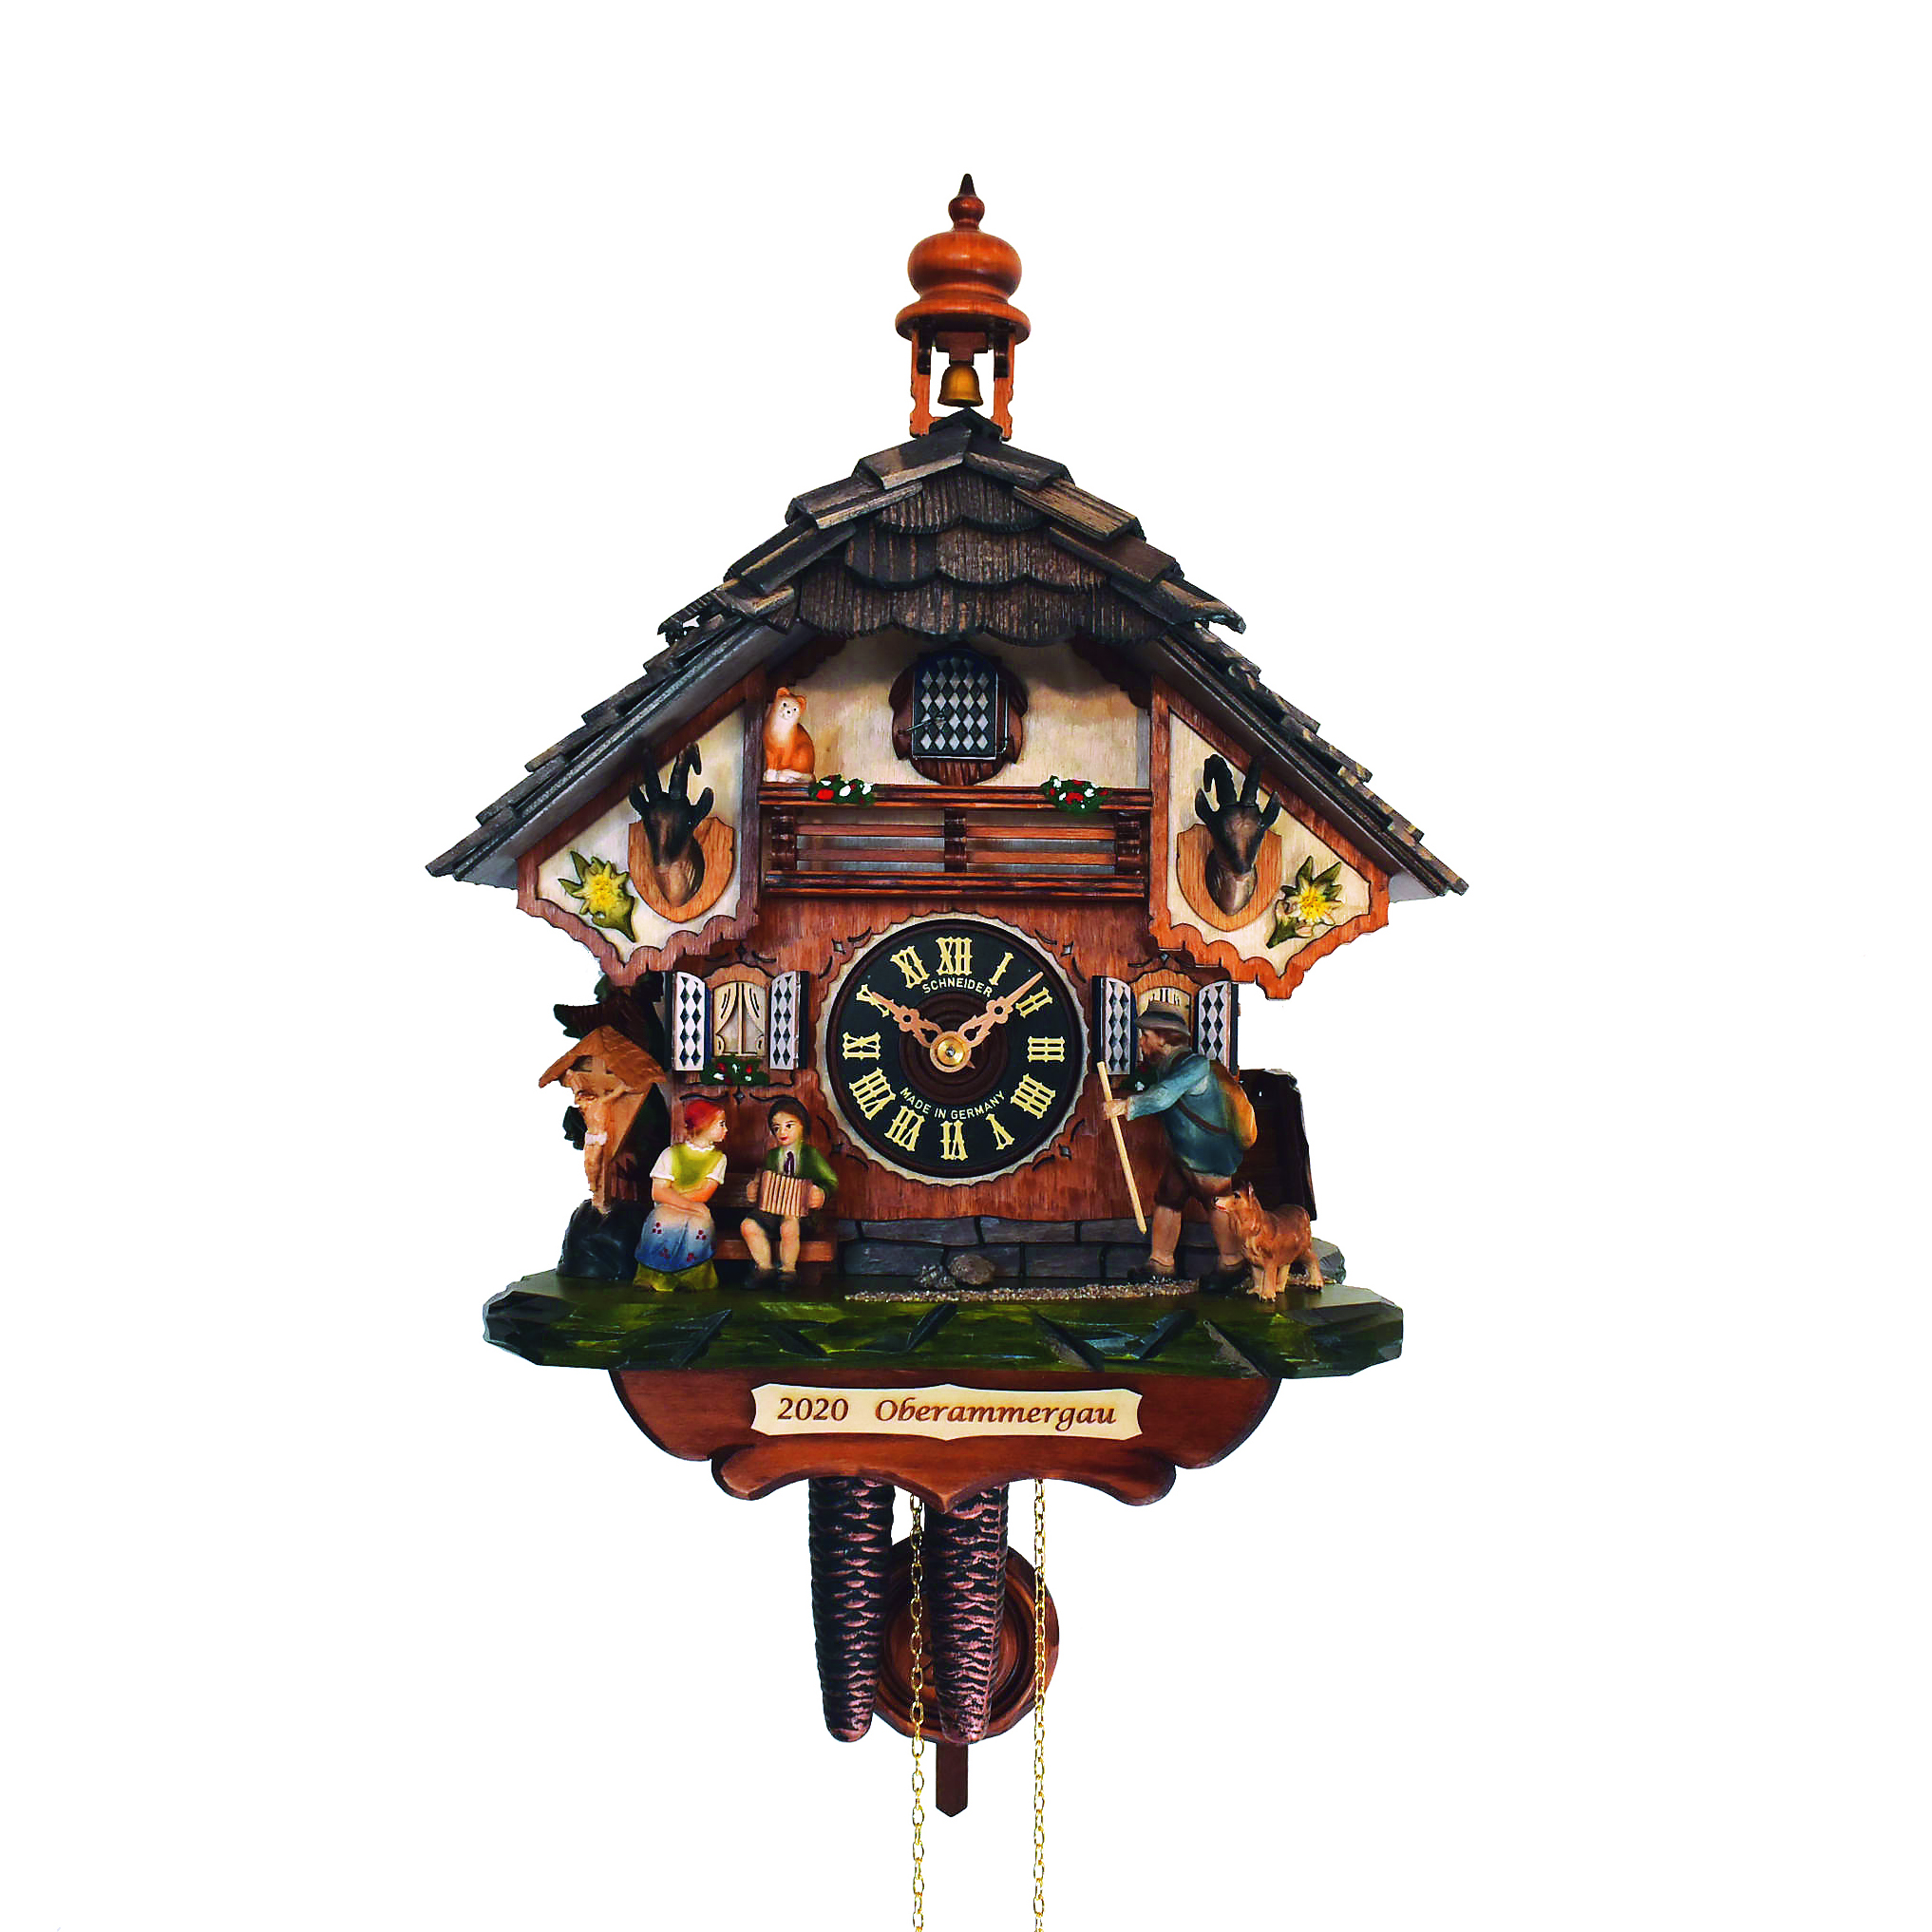 Home of the original Black Forest Cuckoo Clock - Anton Schneider 